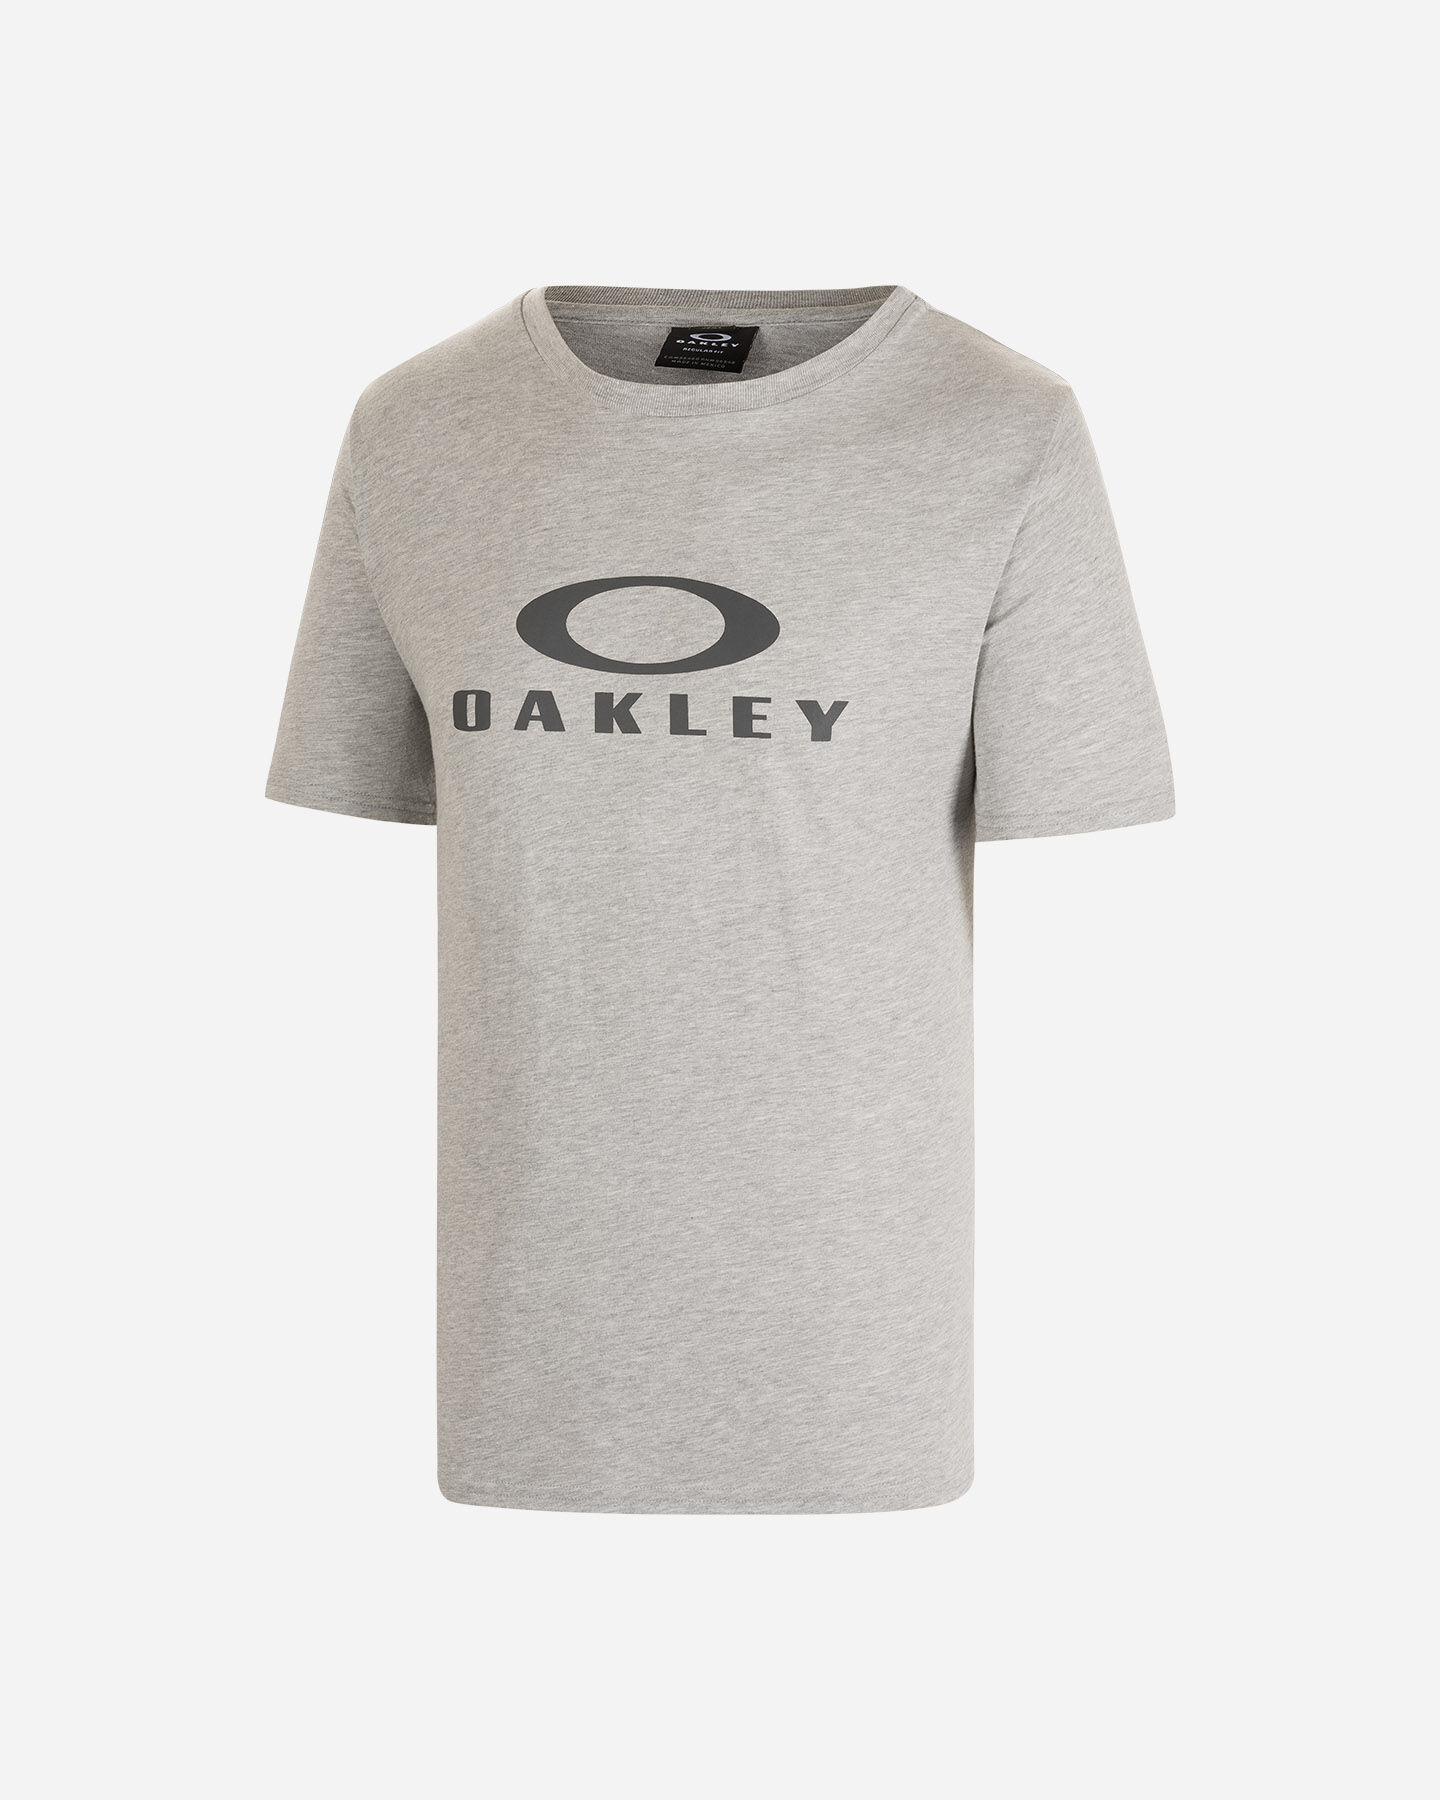  T-Shirt OAKLEY O BARK 2.0 M S5481358|28B|XS scatto 0